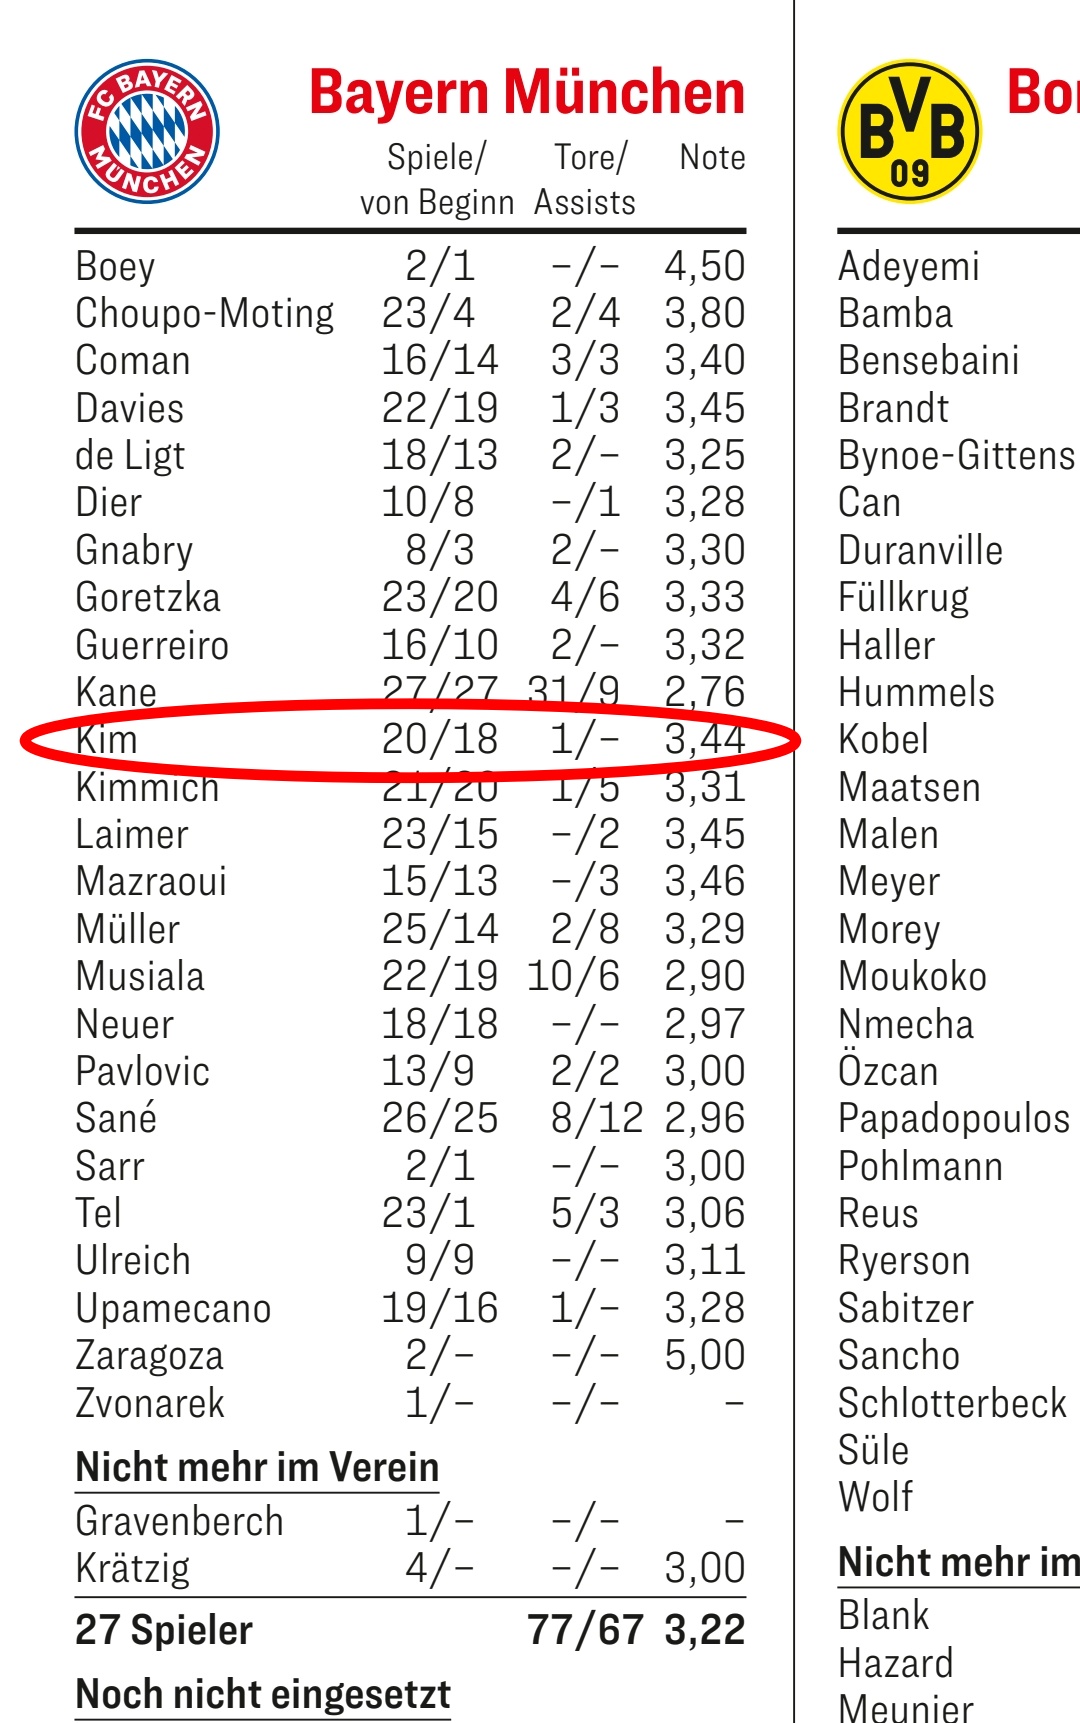 키커가 지난 2일 공개한 이번 시즌 뮌헨 선수단 평균 평점에 따르면 김민재는 3.44점으로 센터백 꼴찌, 팀 내 최하위권에 위치한 것으로 나타났다. 전반기 내내 주전 센터백으로 활약했던 김민재의 활약이 크게 돋보이지 않았다는 평가다. 키커